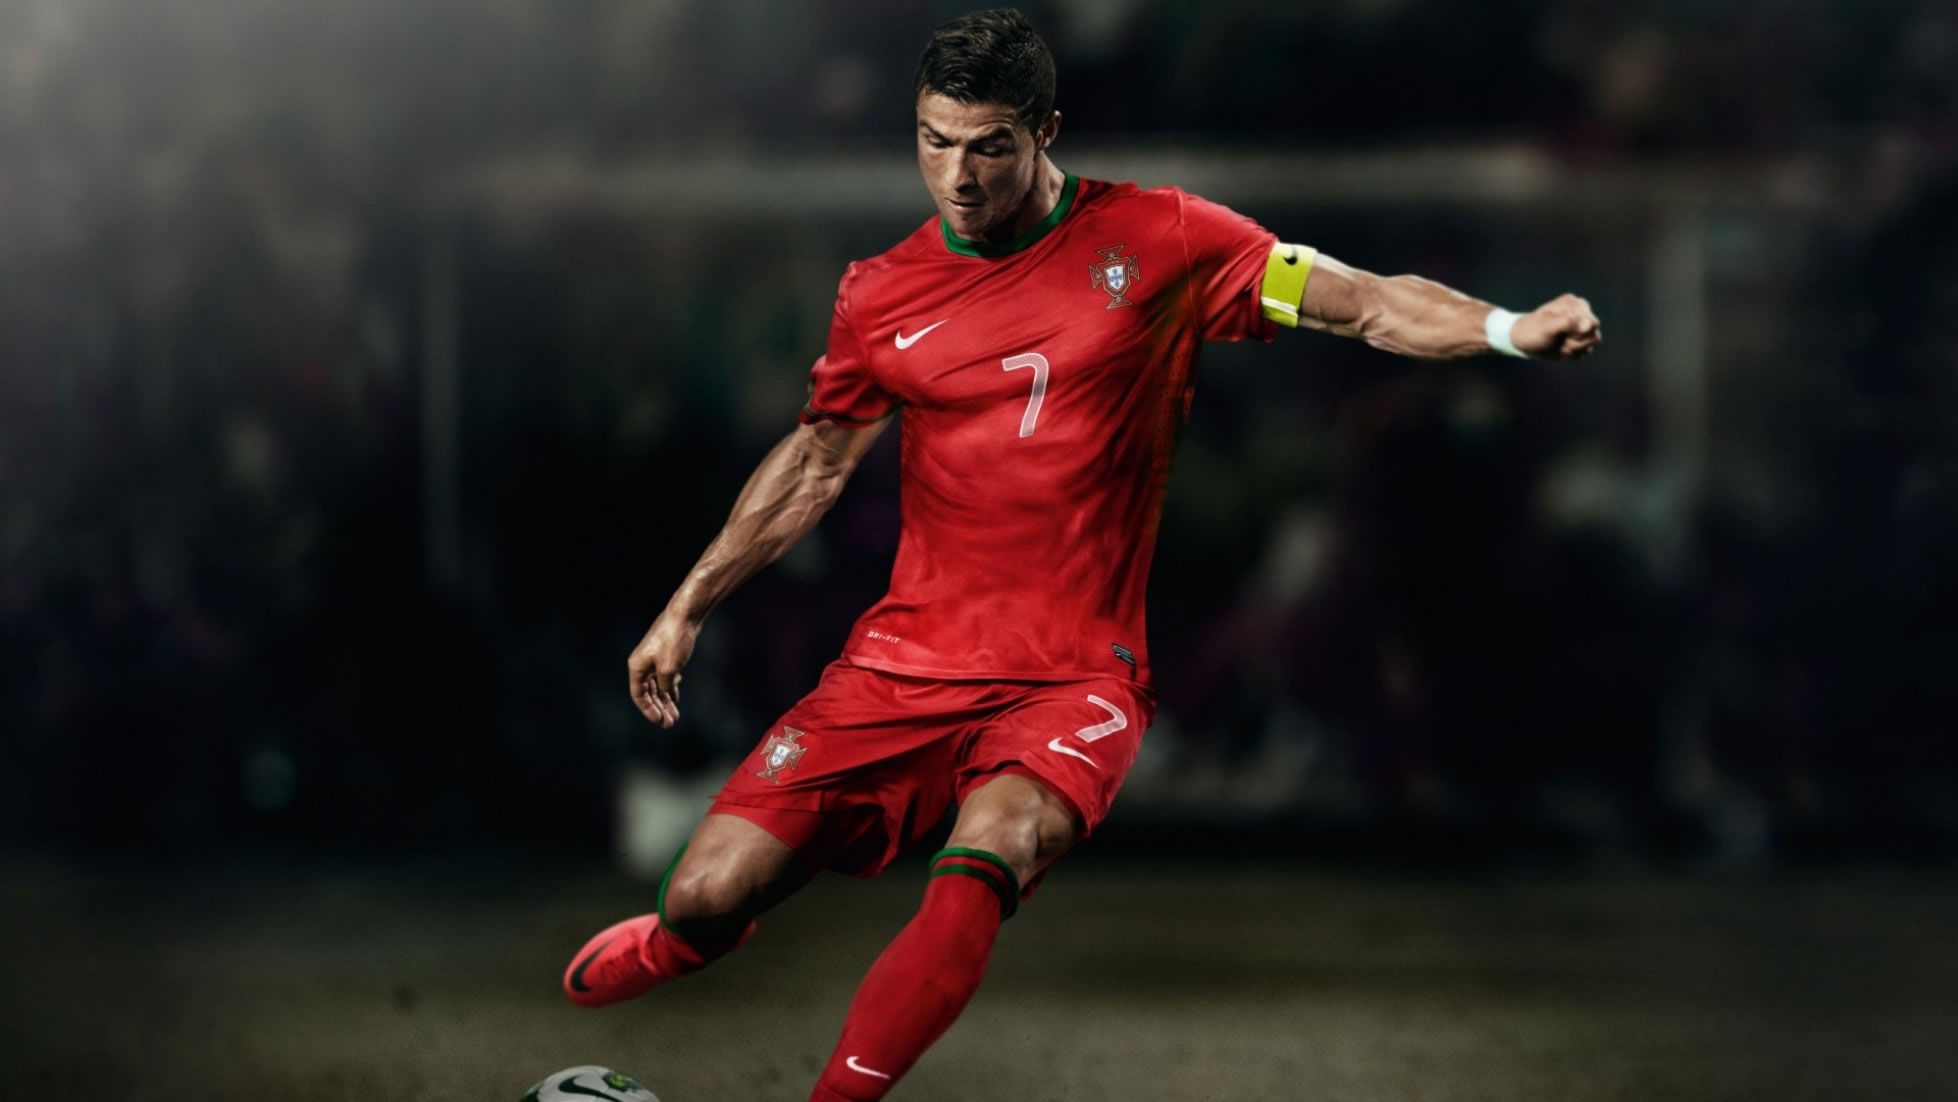 Cristiano Ronaldo Portugal Free Kick .wallpapertip.com